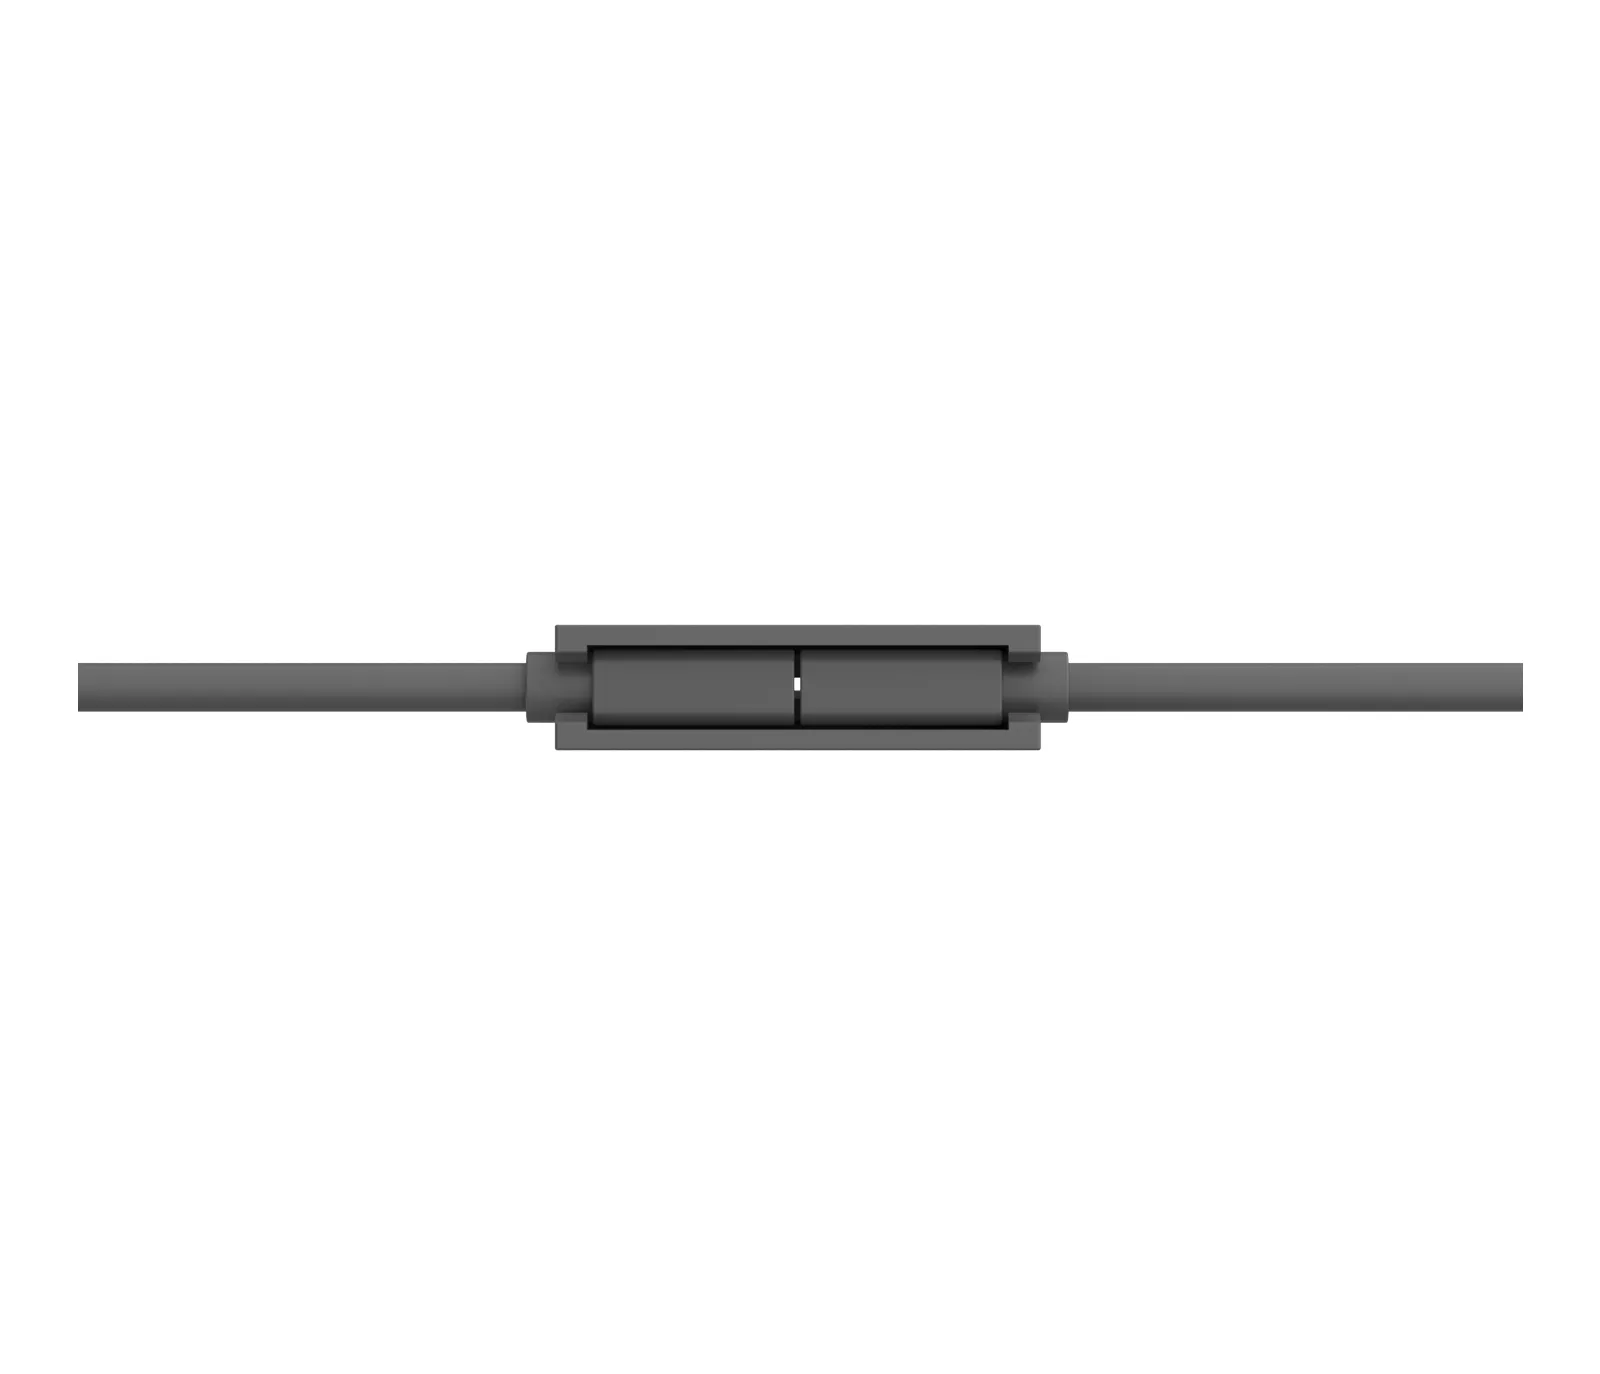 Vente LOGITECH MeetUp Microphone extension cable 10 m for Logitech au meilleur prix - visuel 4